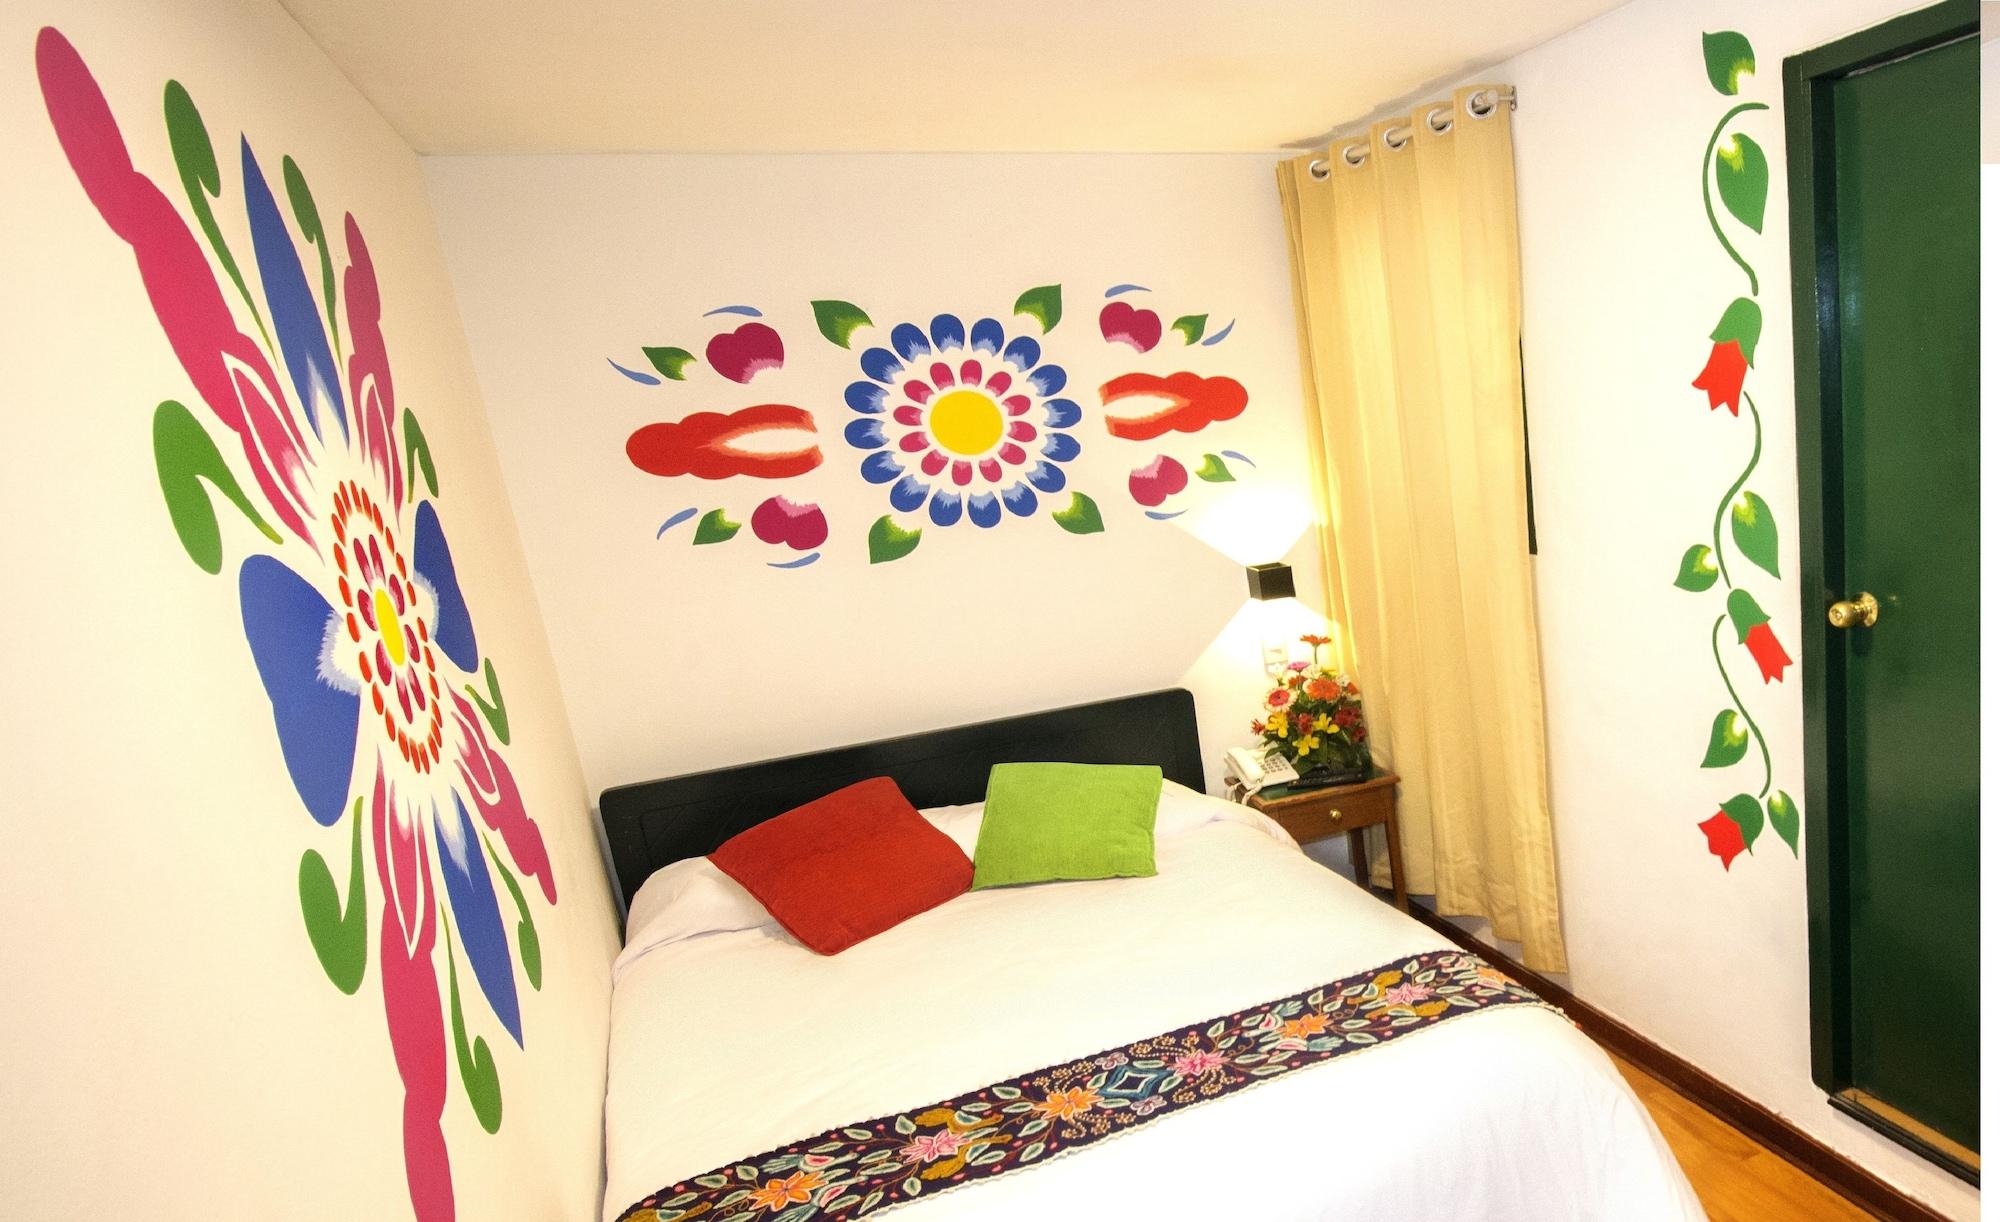 מלון Cusco Plaza Nazarenas מראה חיצוני תמונה